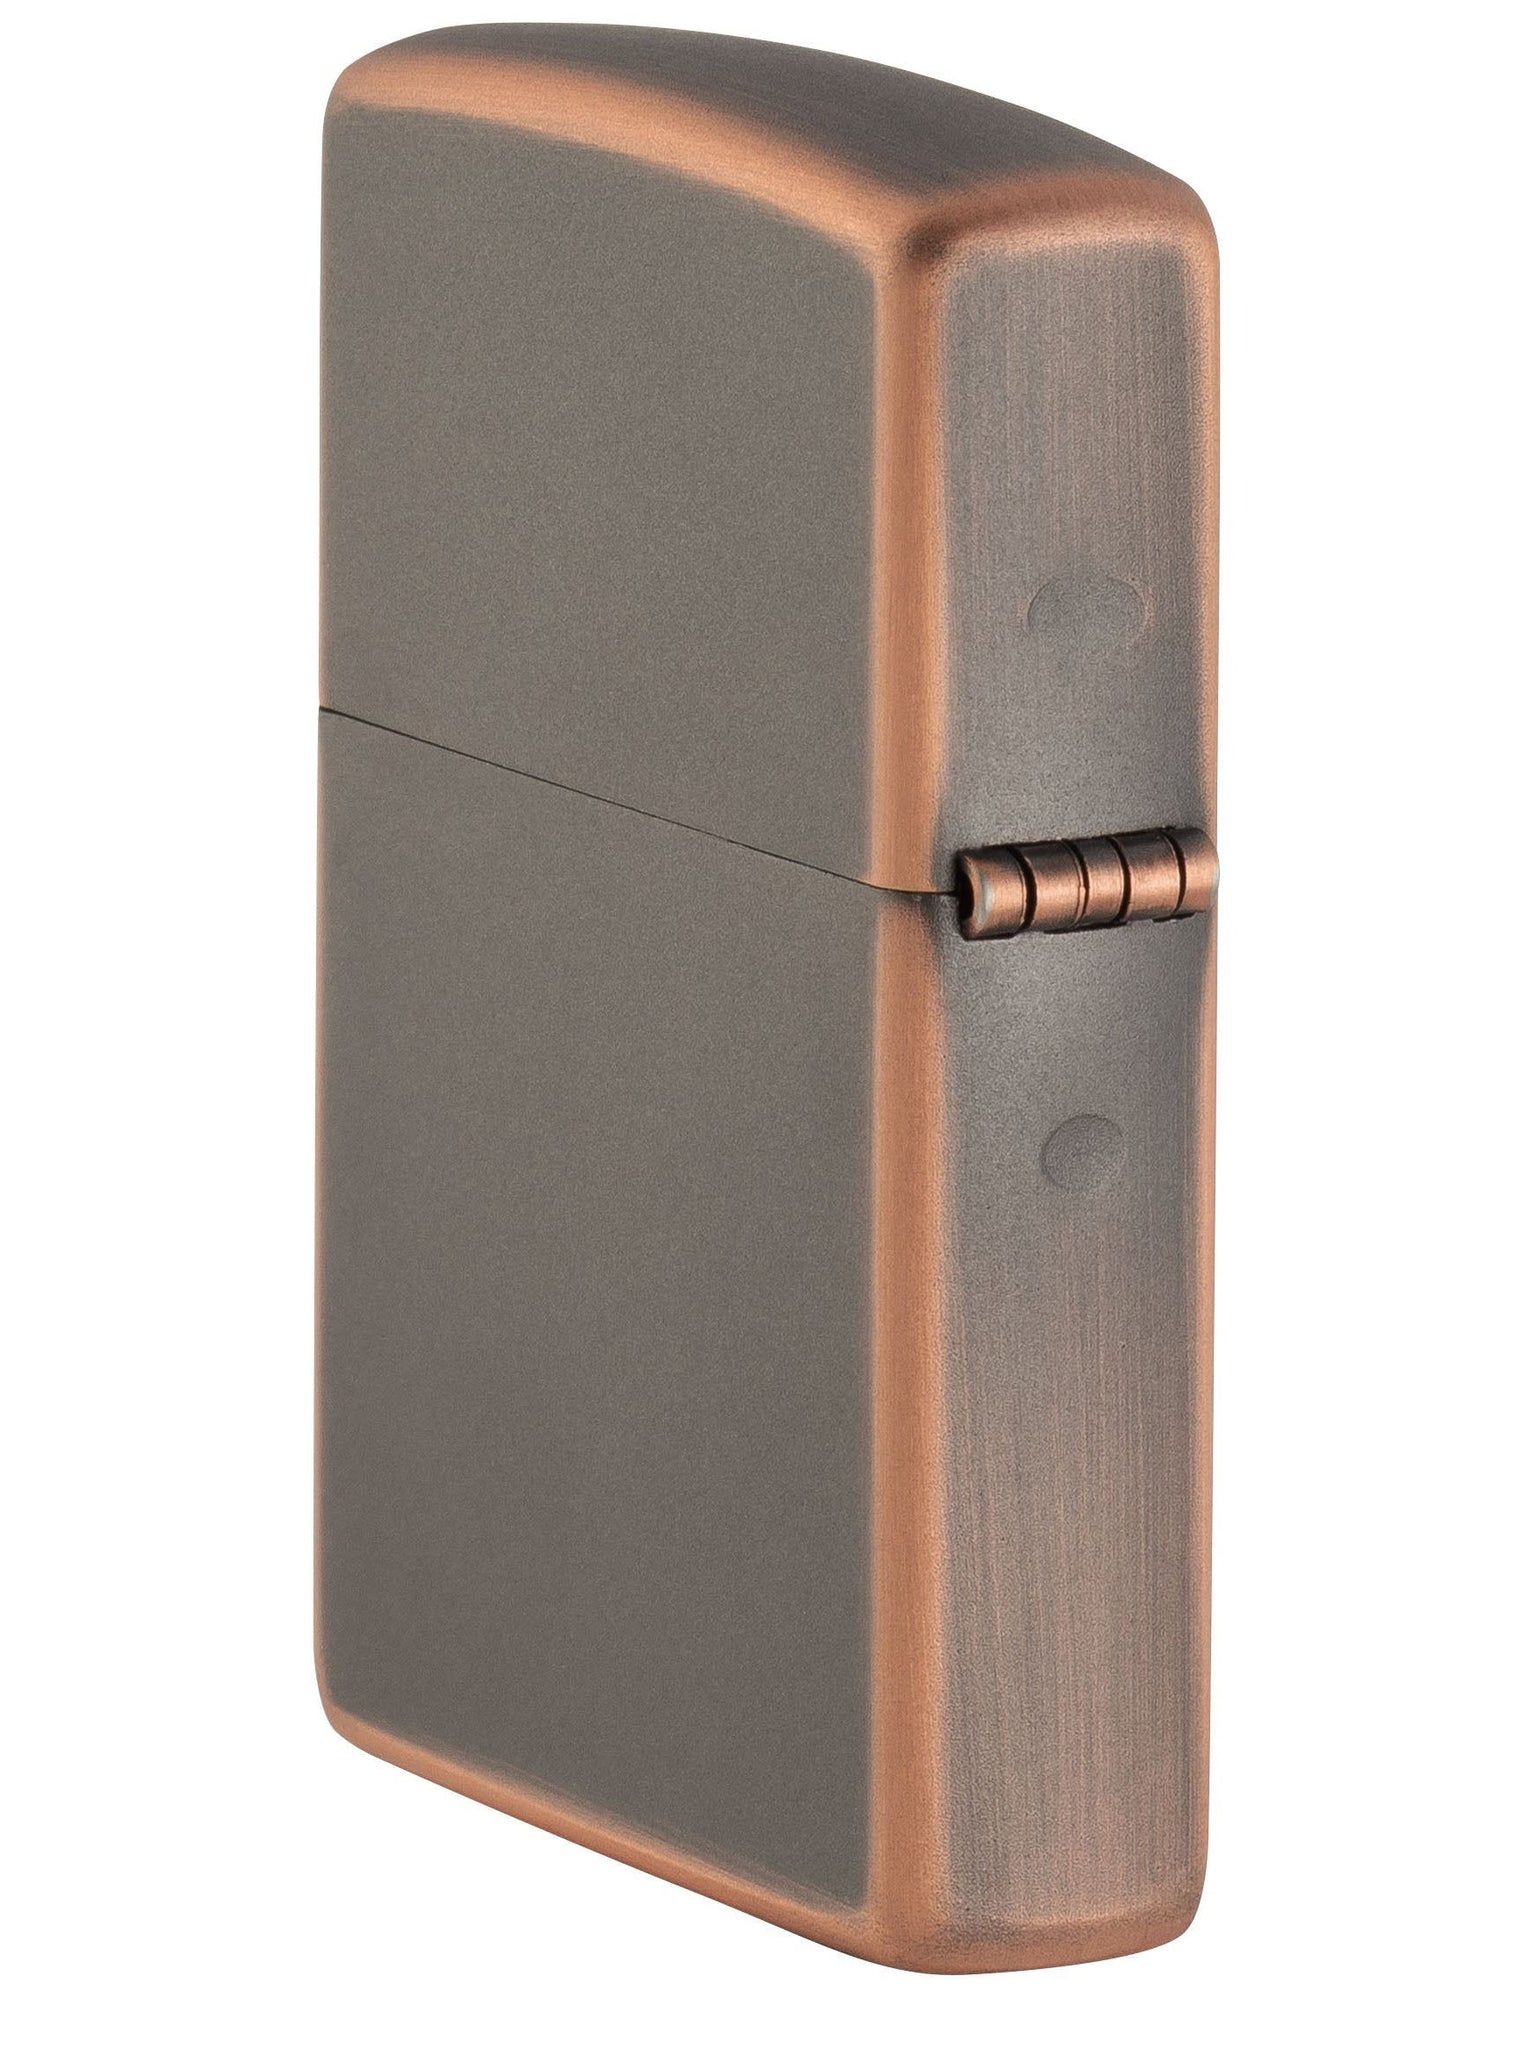 Zippo Lighter: Rustic Bronze - Rustic Bronze 49839